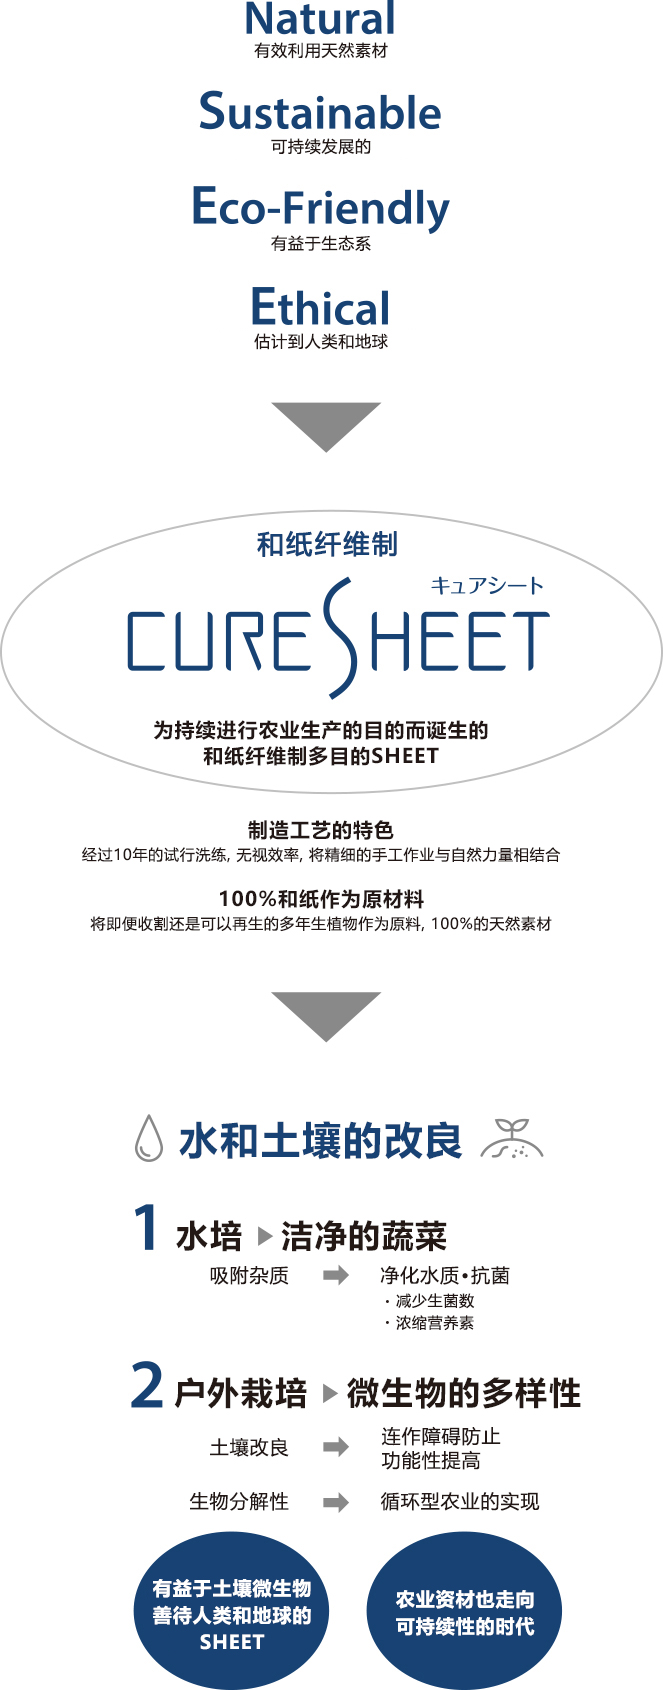 由独自开发的和纸纤维制成的农业用SHEET(CURESHEET)。